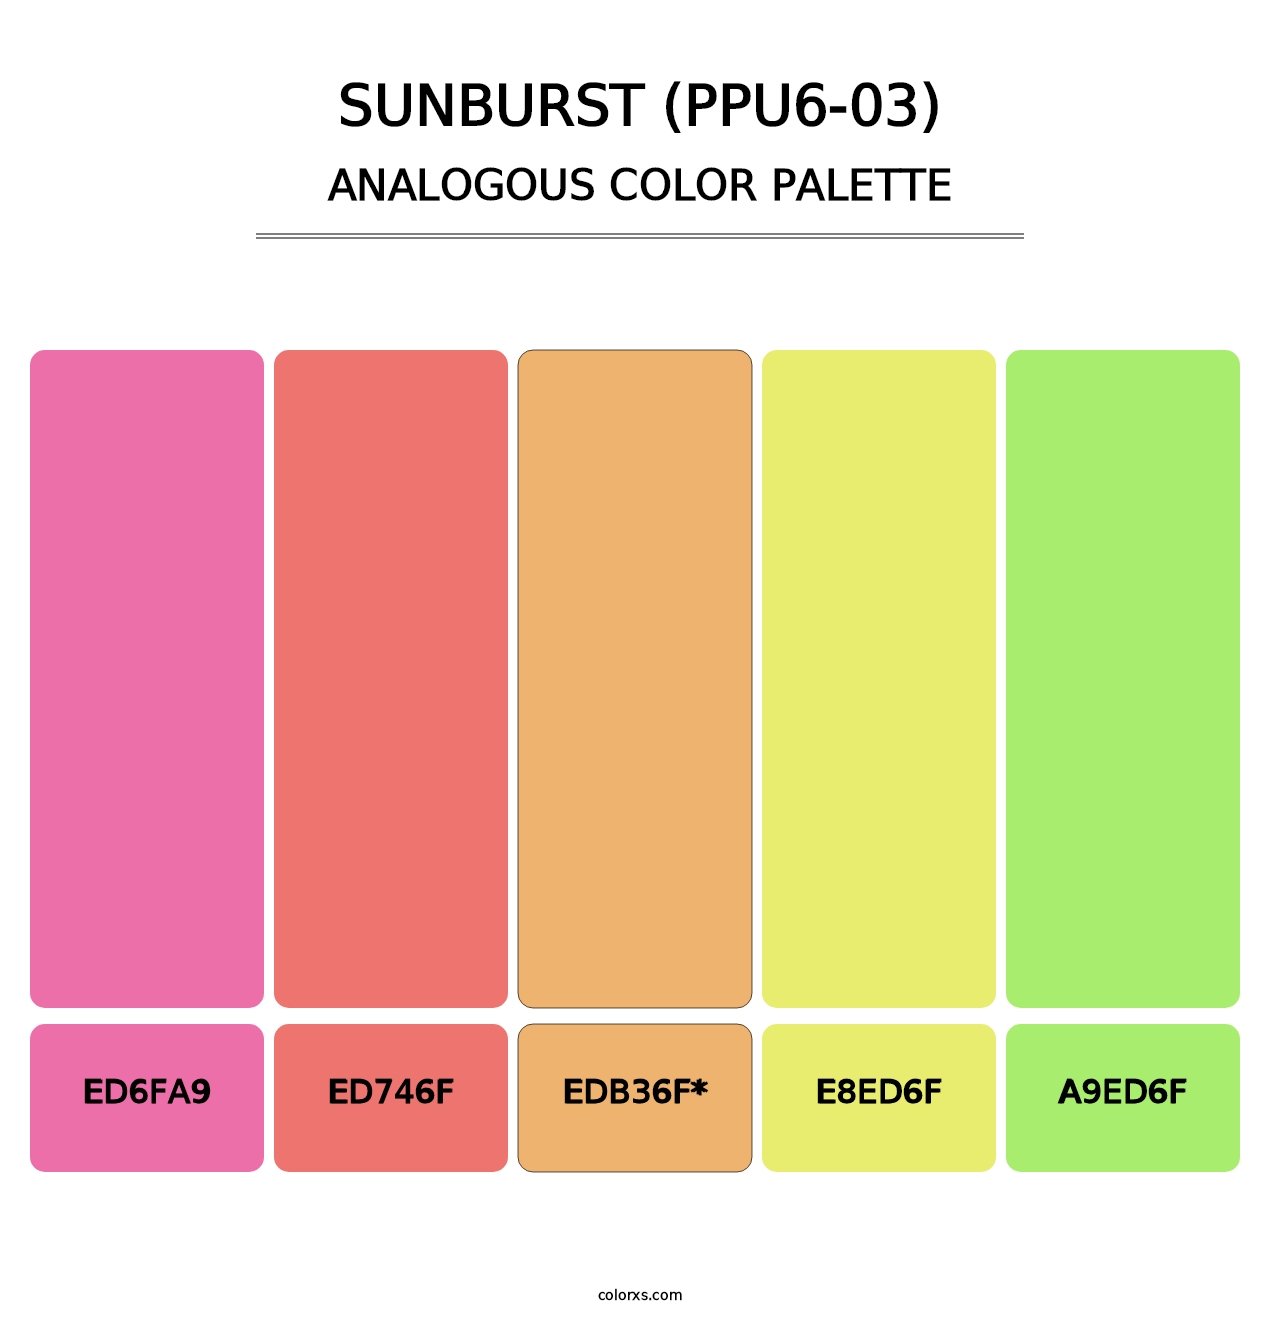 Sunburst (PPU6-03) - Analogous Color Palette